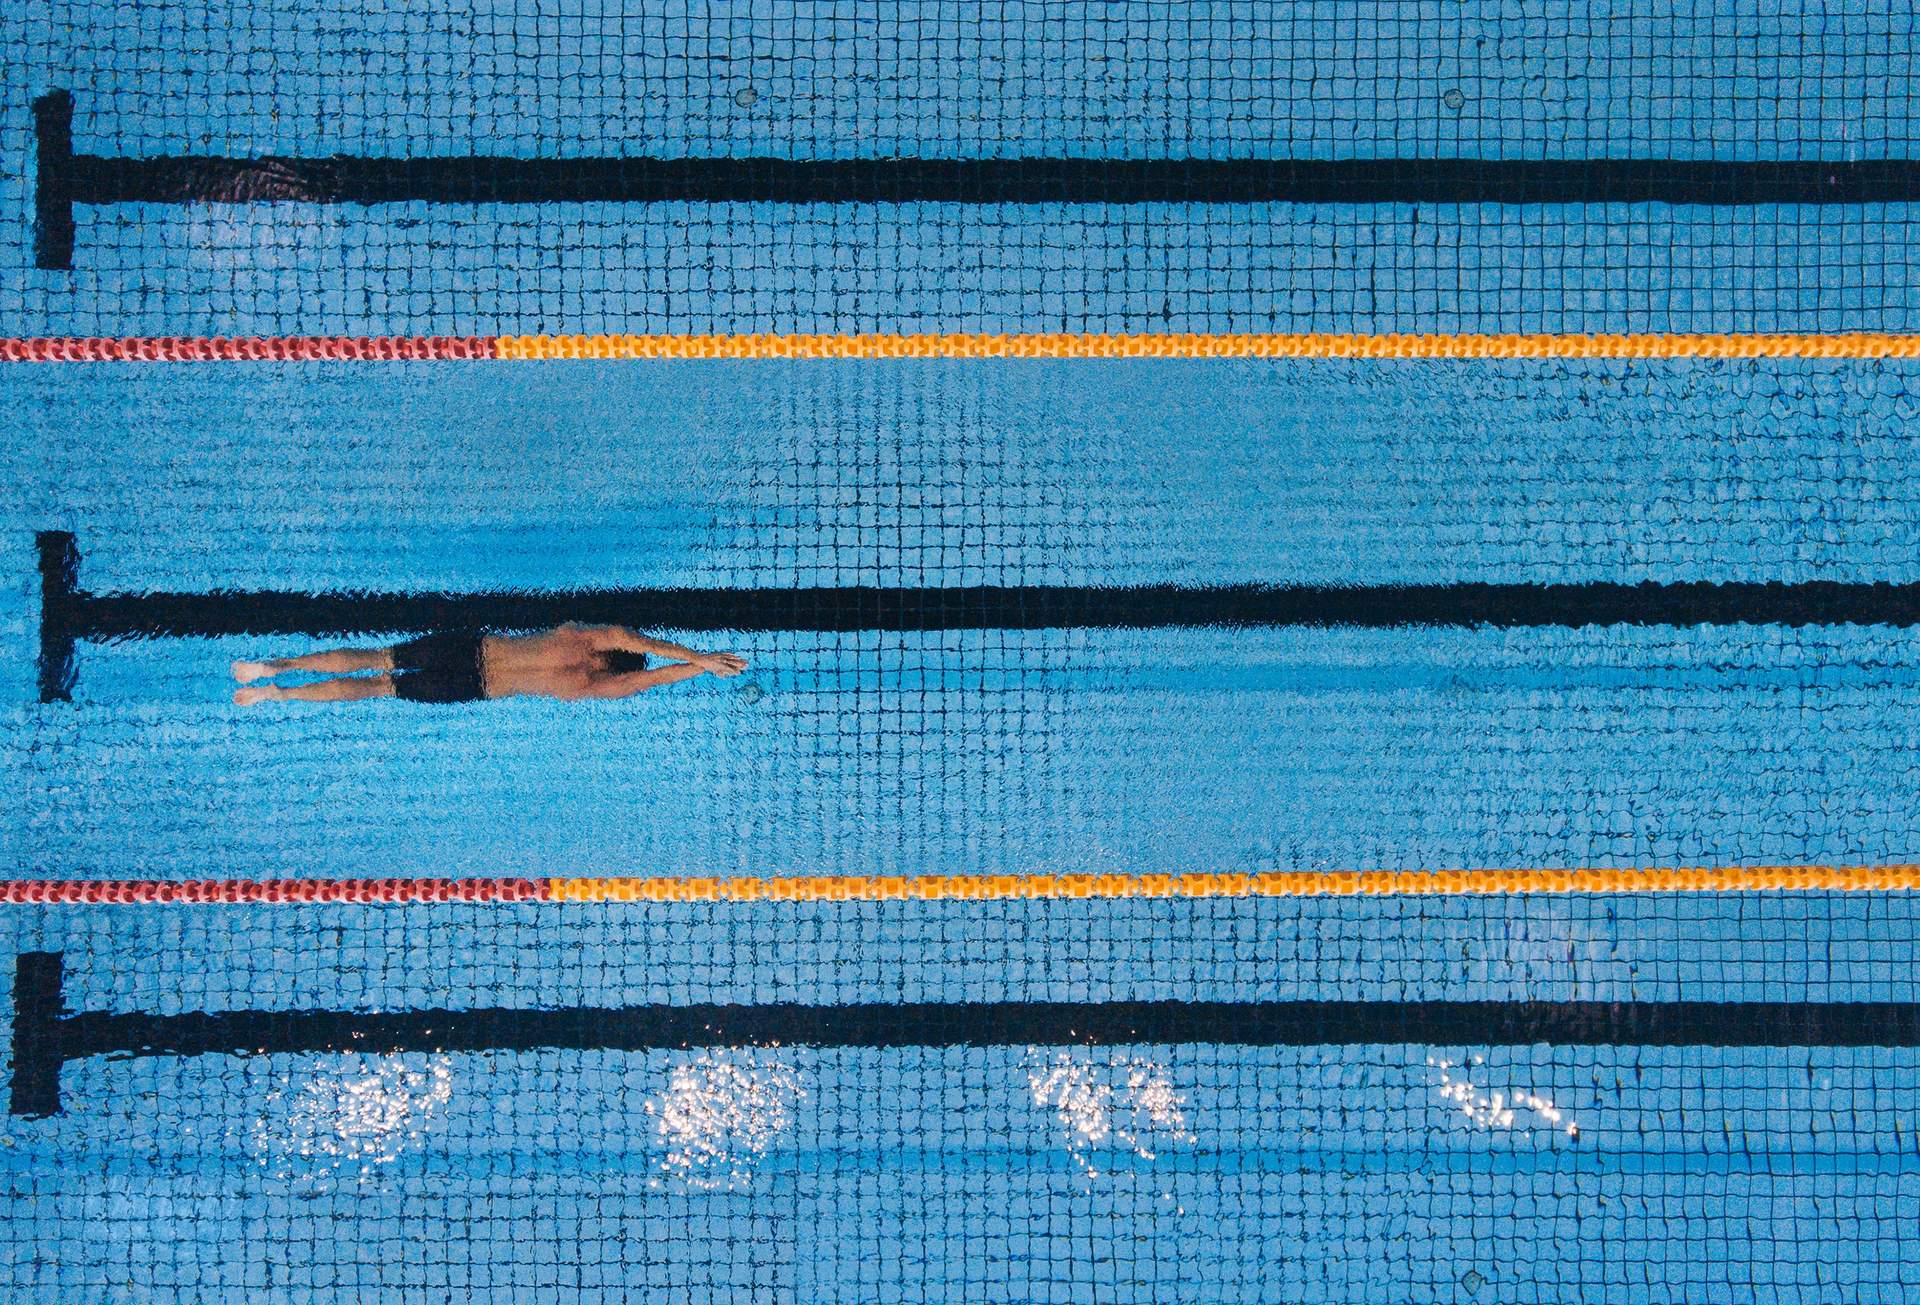 Cuatro piscinas de Madrid incorporan gorros anti-ahogamientos controlados por bluetooth